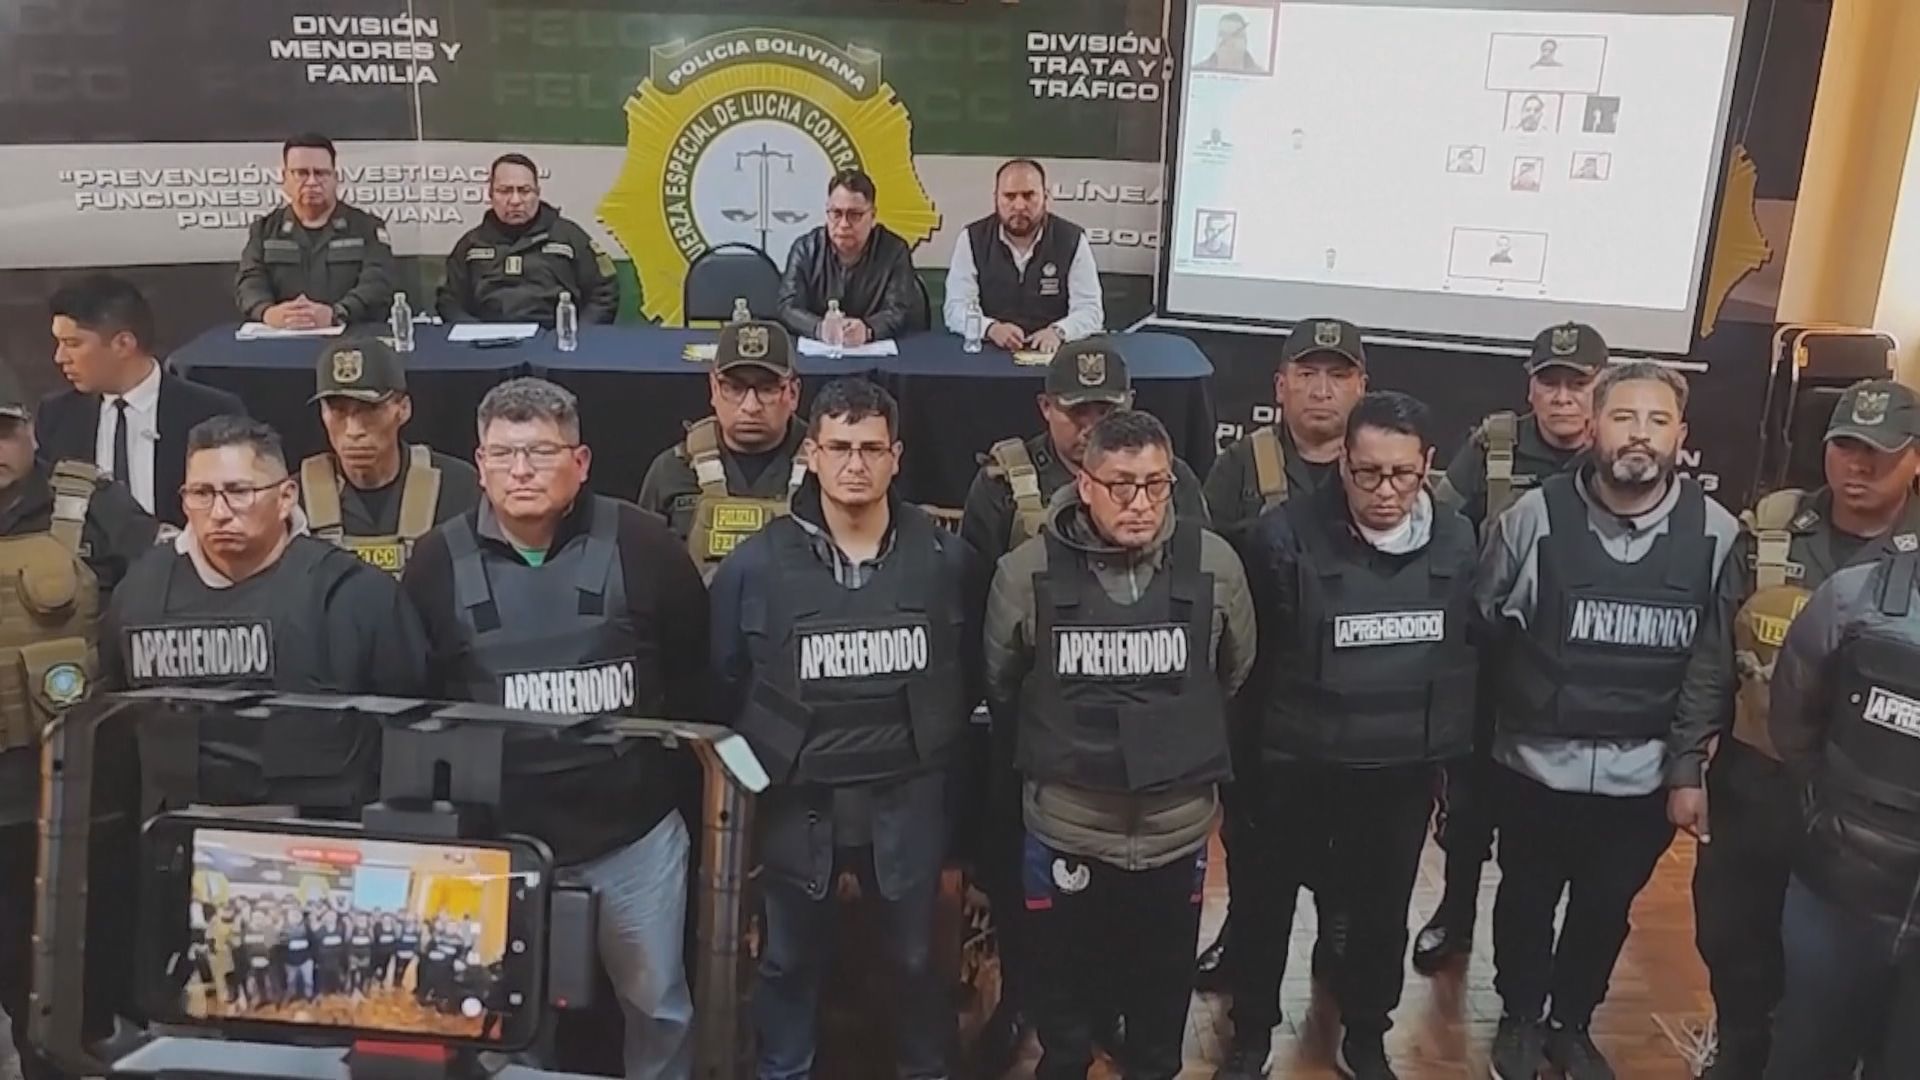 玻利維亞企圖政變事件 被捕者增至17人